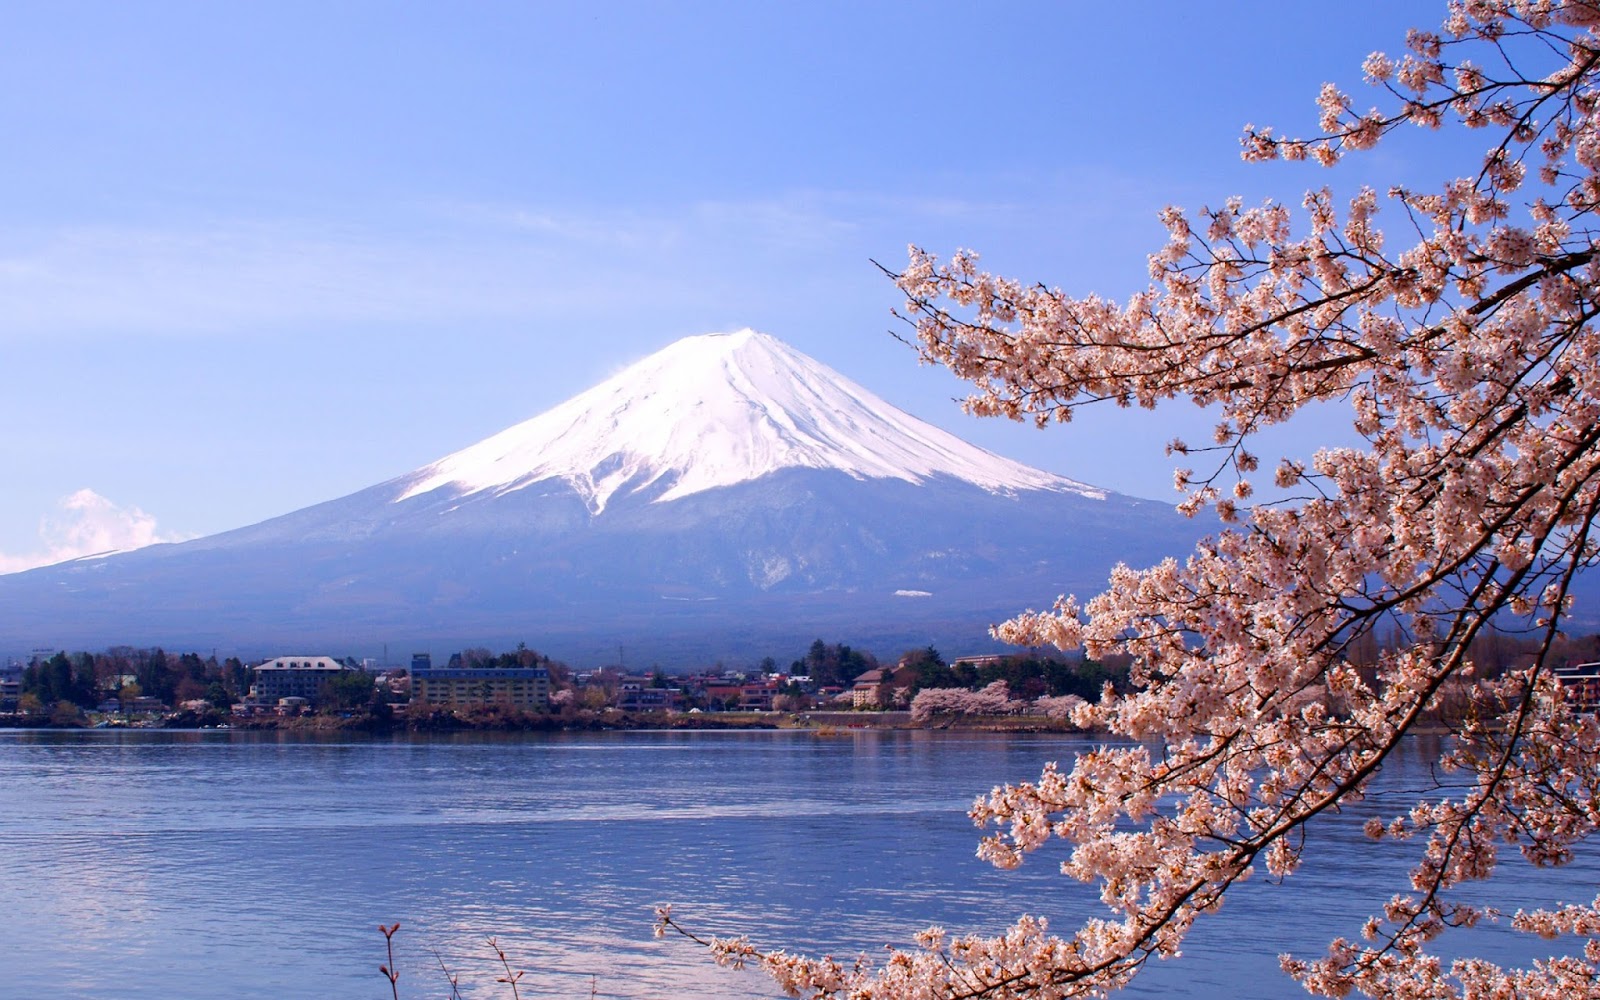 Núi Phú Sĩ Nhật Bản: Là đại diện cho xứ sở hoa anh đào, Núi Phú Sĩ là địa danh nổi tiếng của Nhật Bản thu hút nhiều khách du lịch đến tham quan mỗi năm. Hình ảnh núi Phú Sĩ trên màn hình sẽ khiến bạn đắm mình trong sự tuyệt đẹp của thiên nhiên và cảm thấy như mình đang đứng trên đỉnh núi.